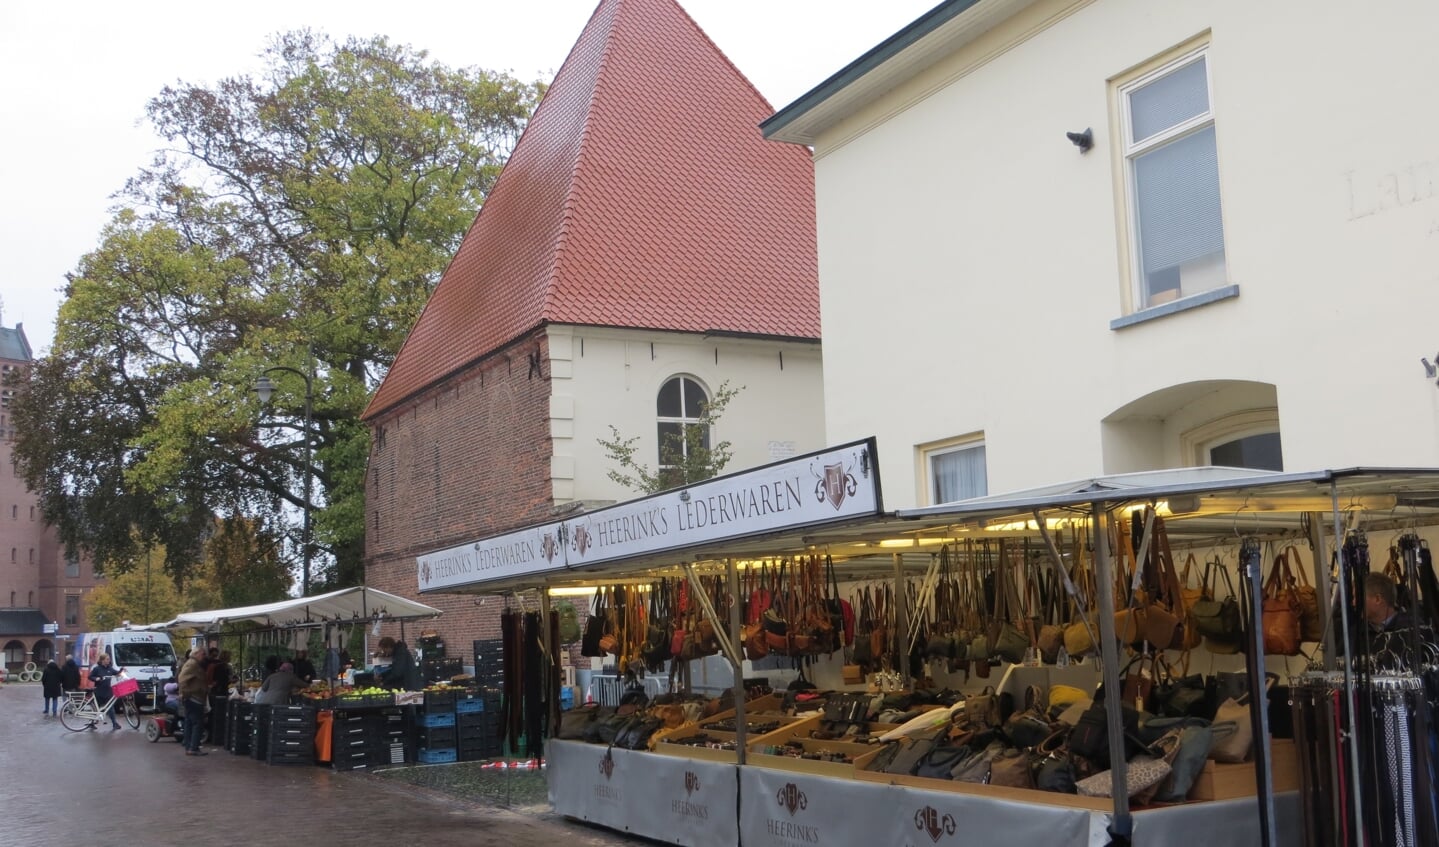 Deel warenmarkt opgesteld in Torenstraat. Foto: Bernhard Harfsterkamp